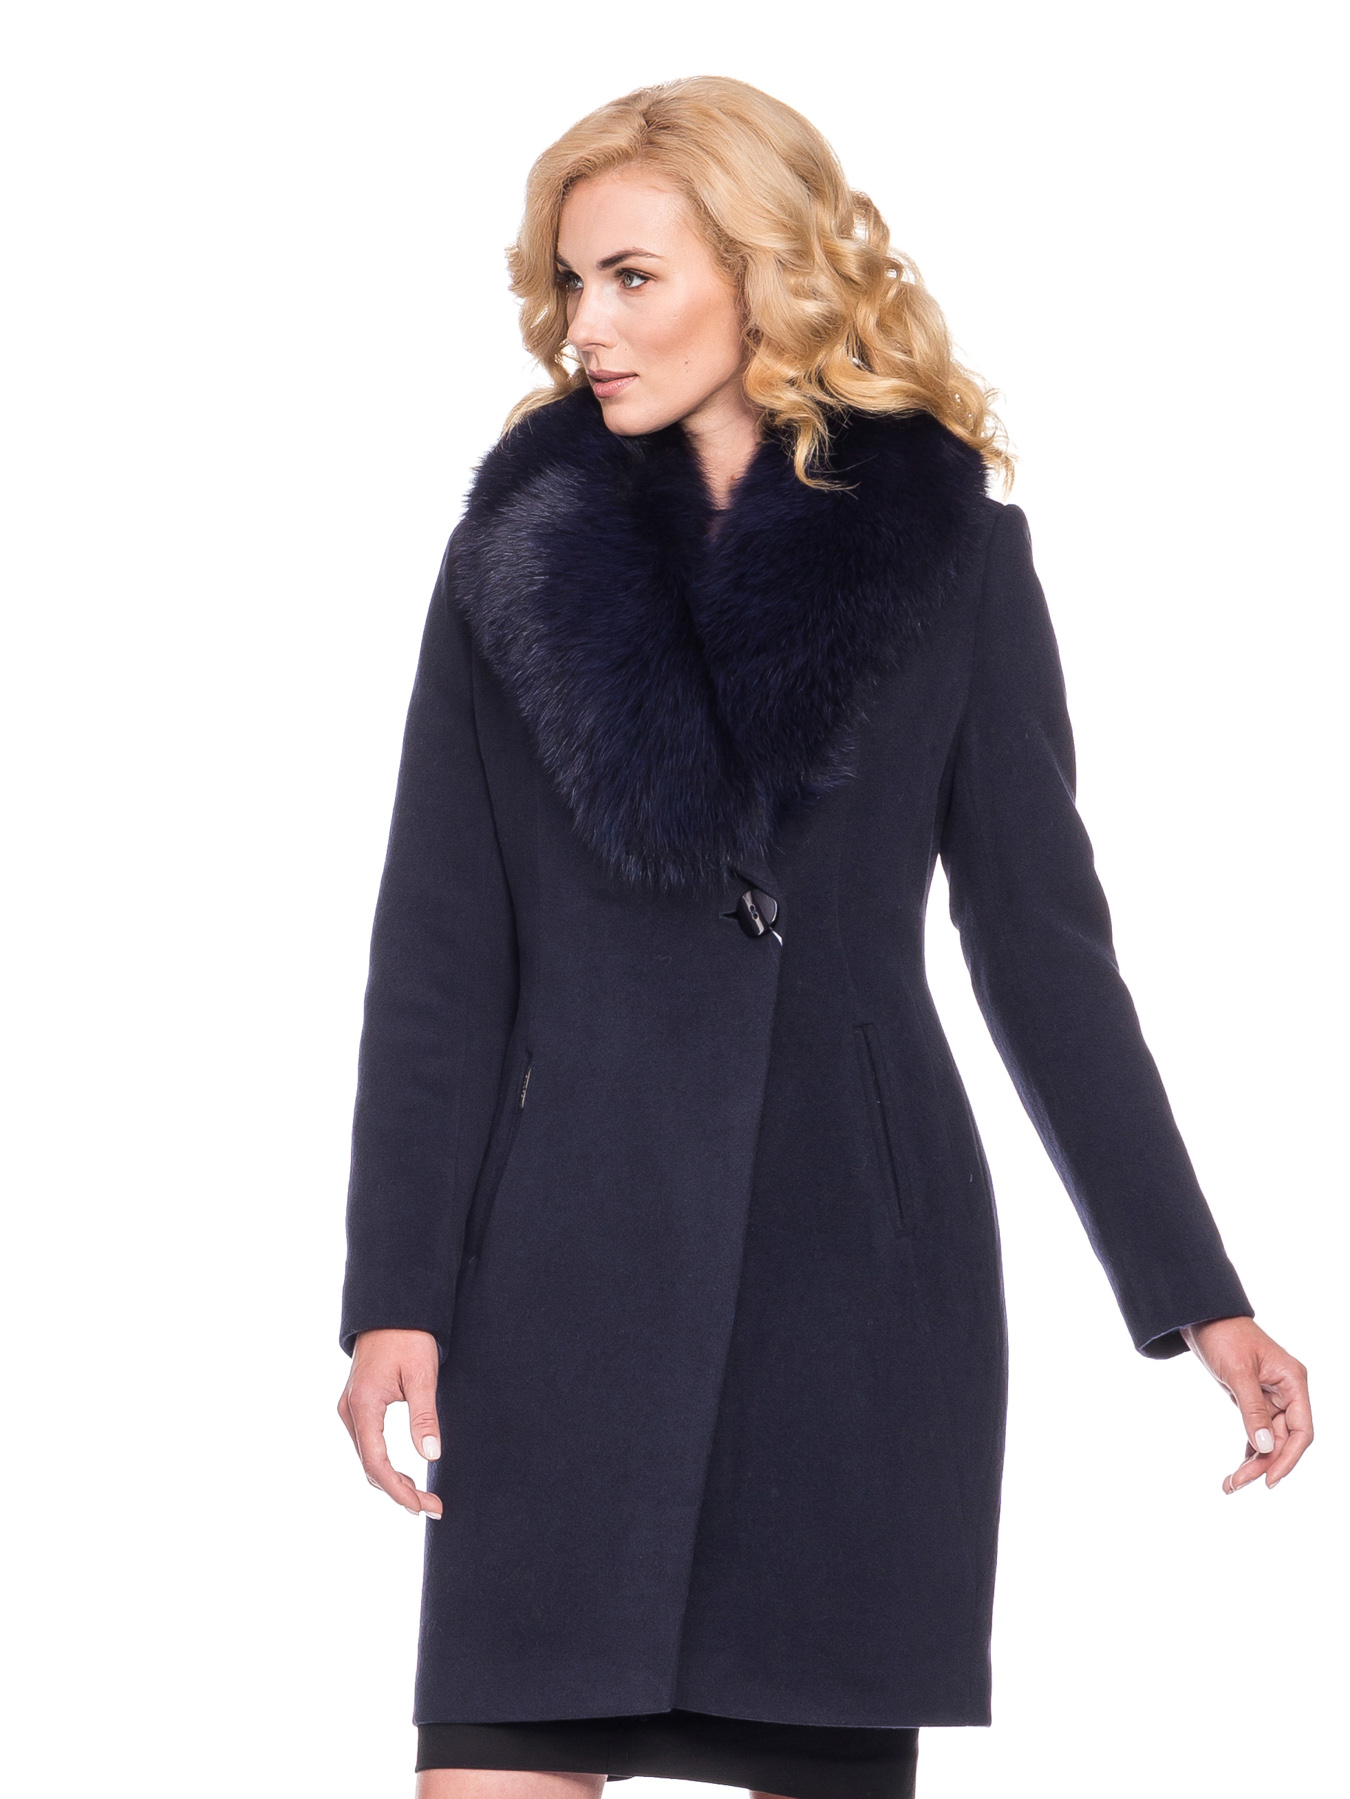 Приталенное зимнее женское пальто из шерсти со съёмным меховым воротником